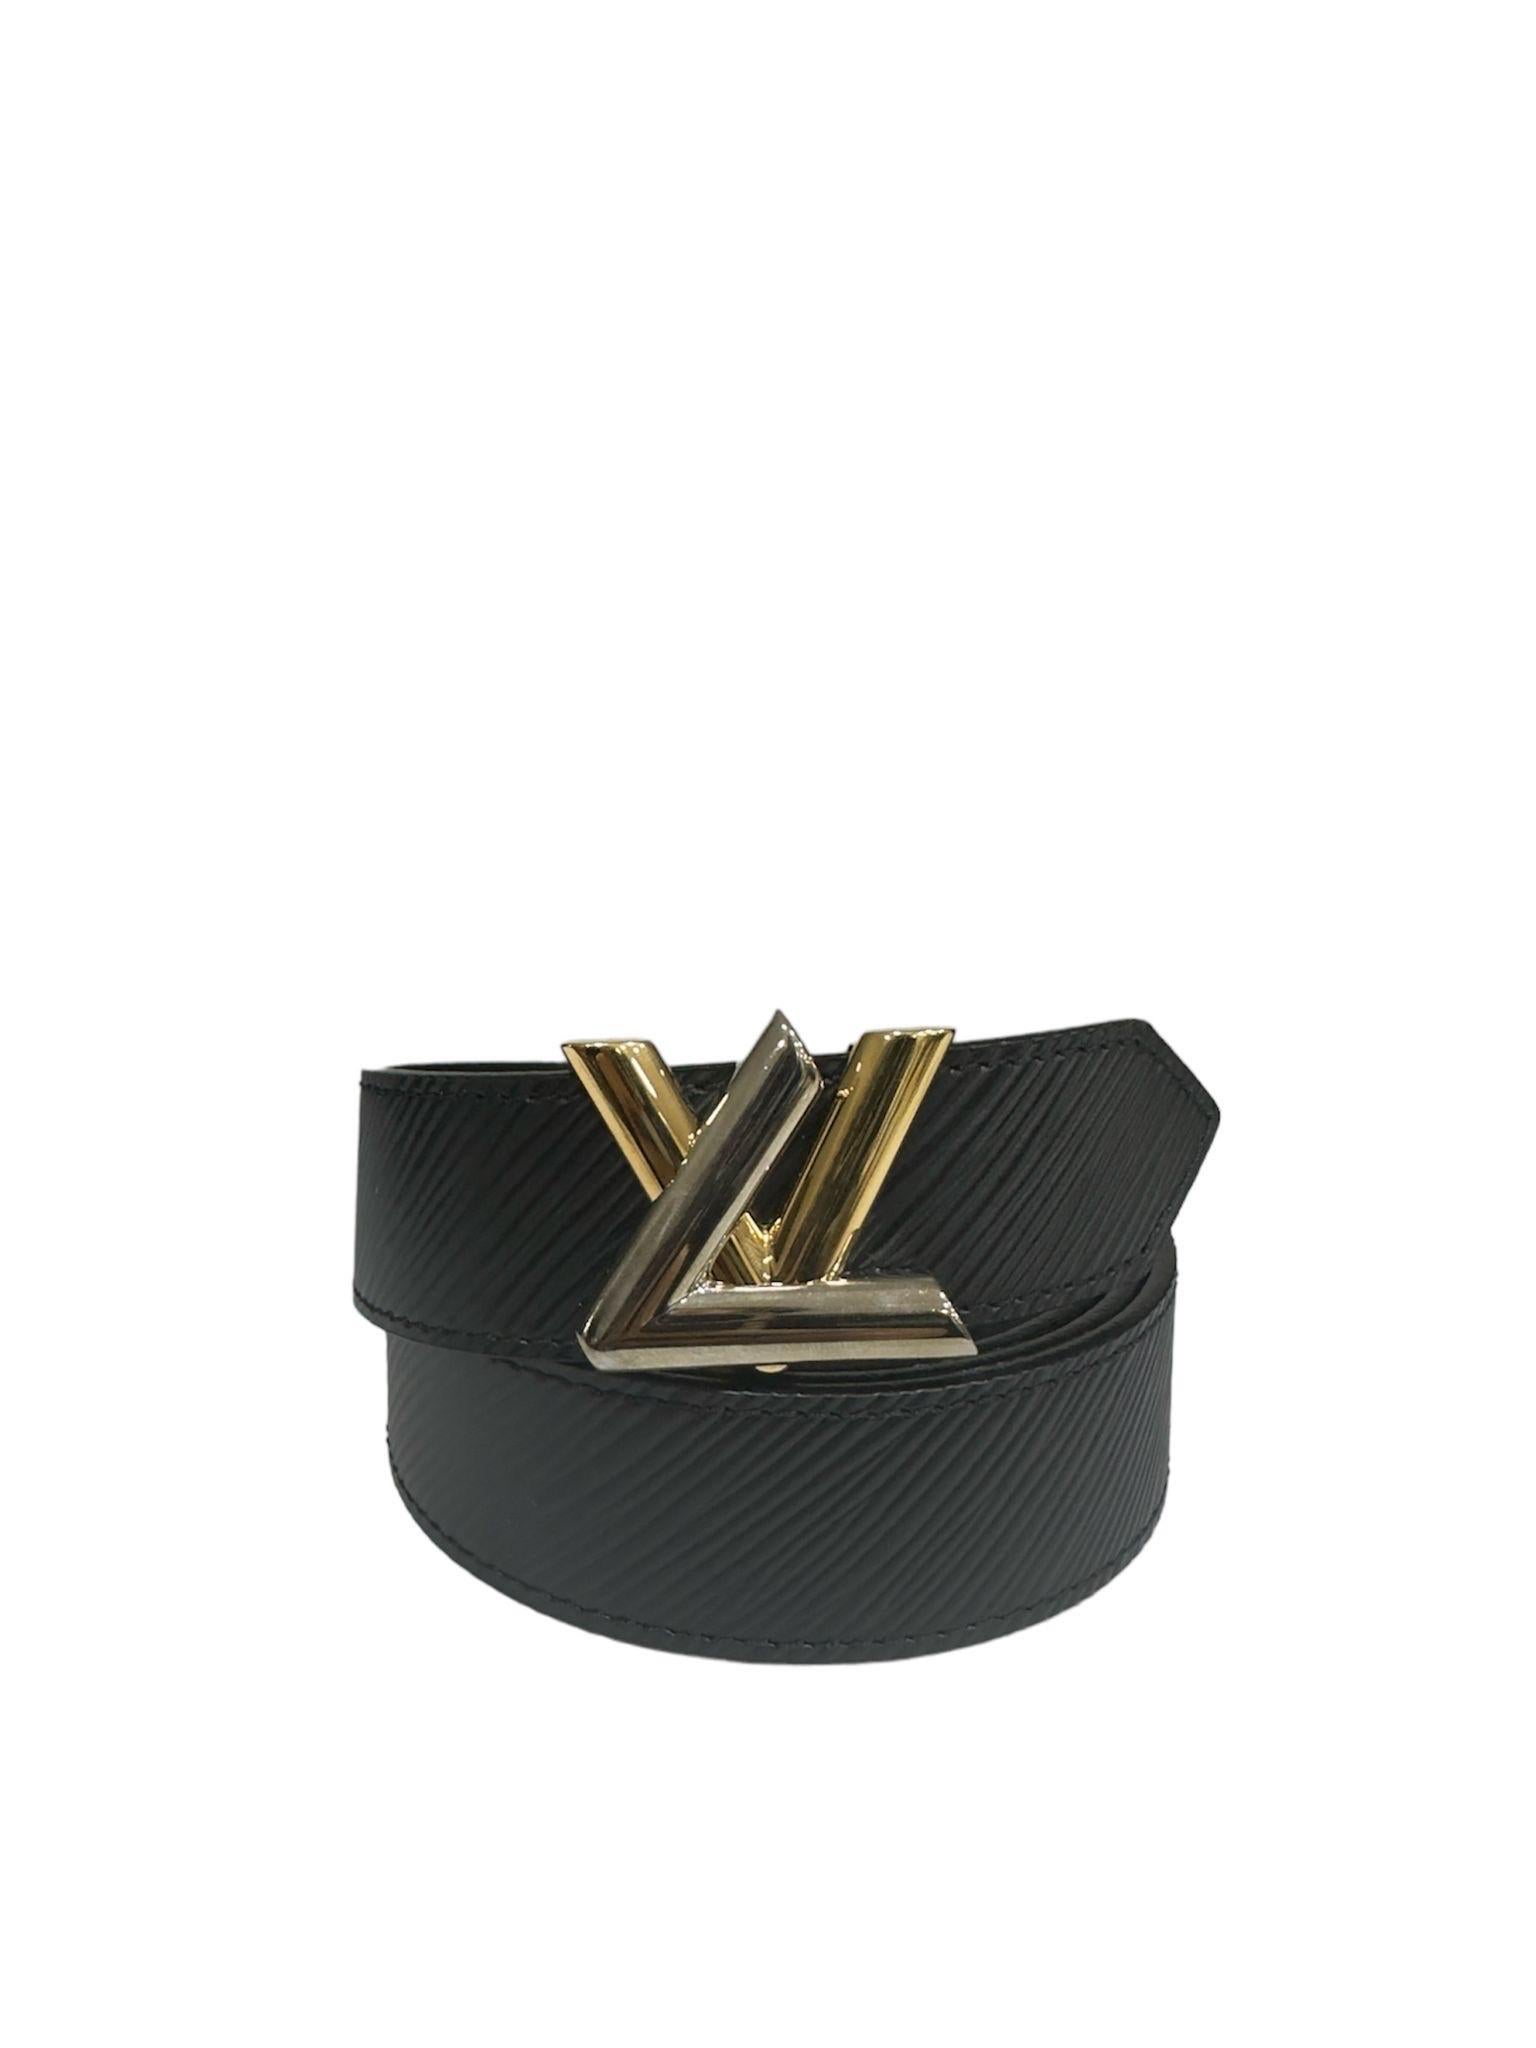 Cintura firmata Louis Vuitton, modello Twist, realizzata in pelle Epi nera con hardware argento e oro. Dotata di una fibbia con logo ”LV” in hardware sia oro che argento. Misura 85 centimetri di lunghezza e 3 centimetri di altezza. Completa di